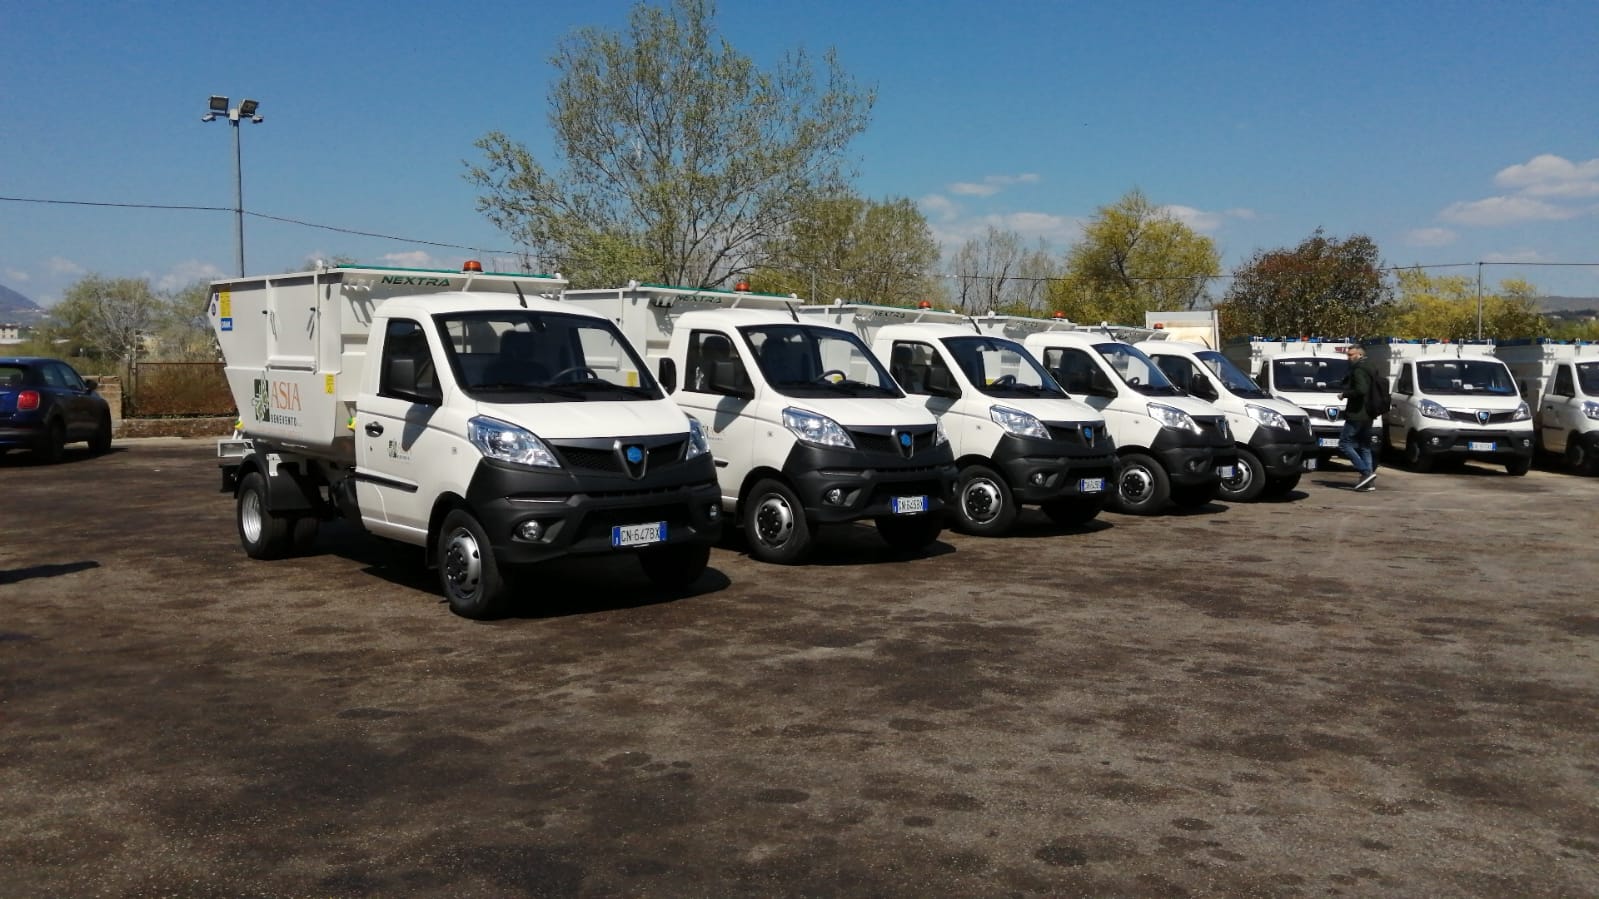 Benevento, cinque nuovi automezzi per la pulizia della città